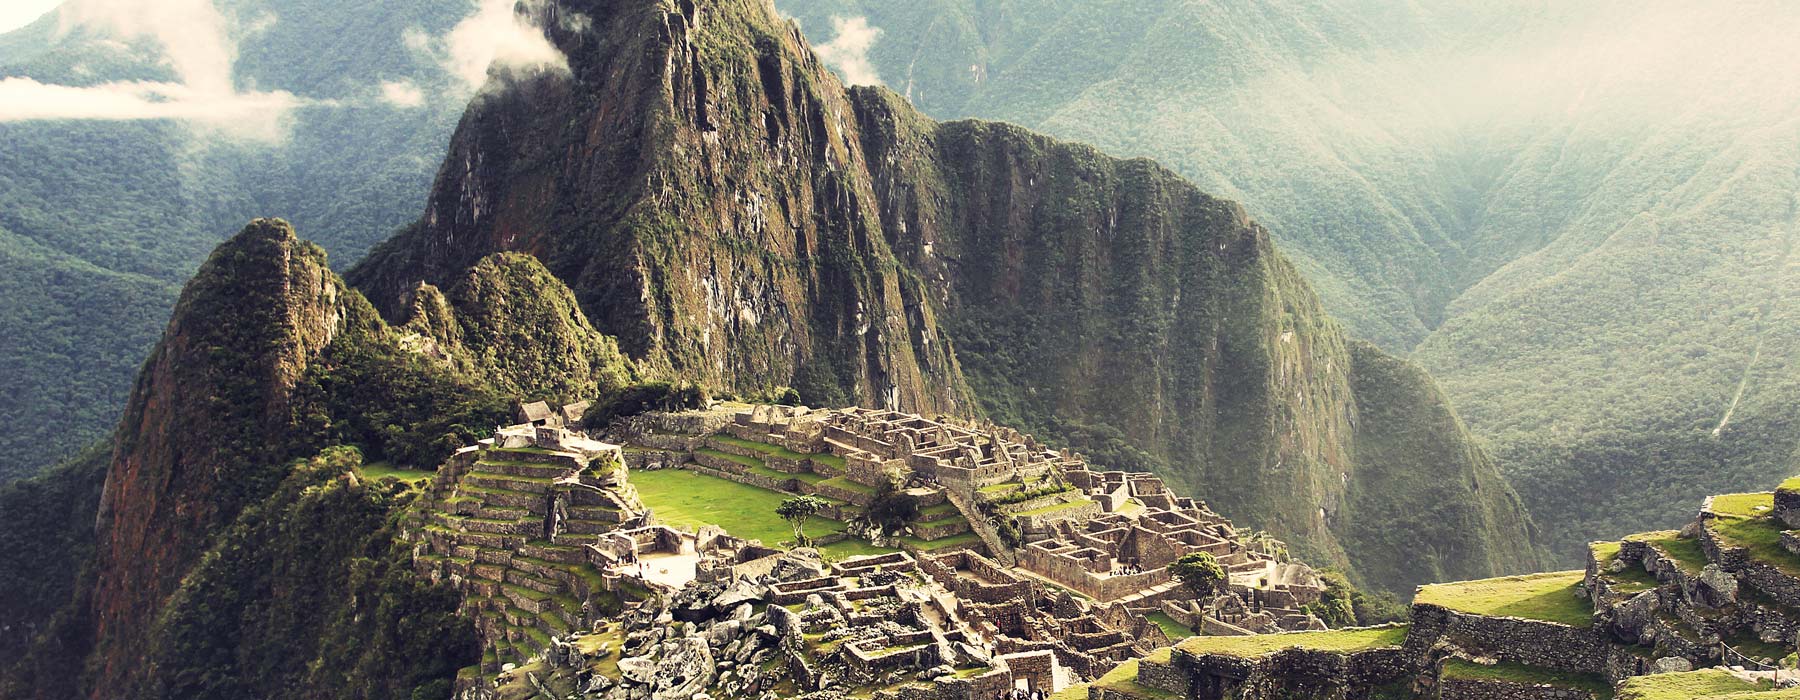 Machu Picchu<br class="hidden-md hidden-lg" /> Holidays